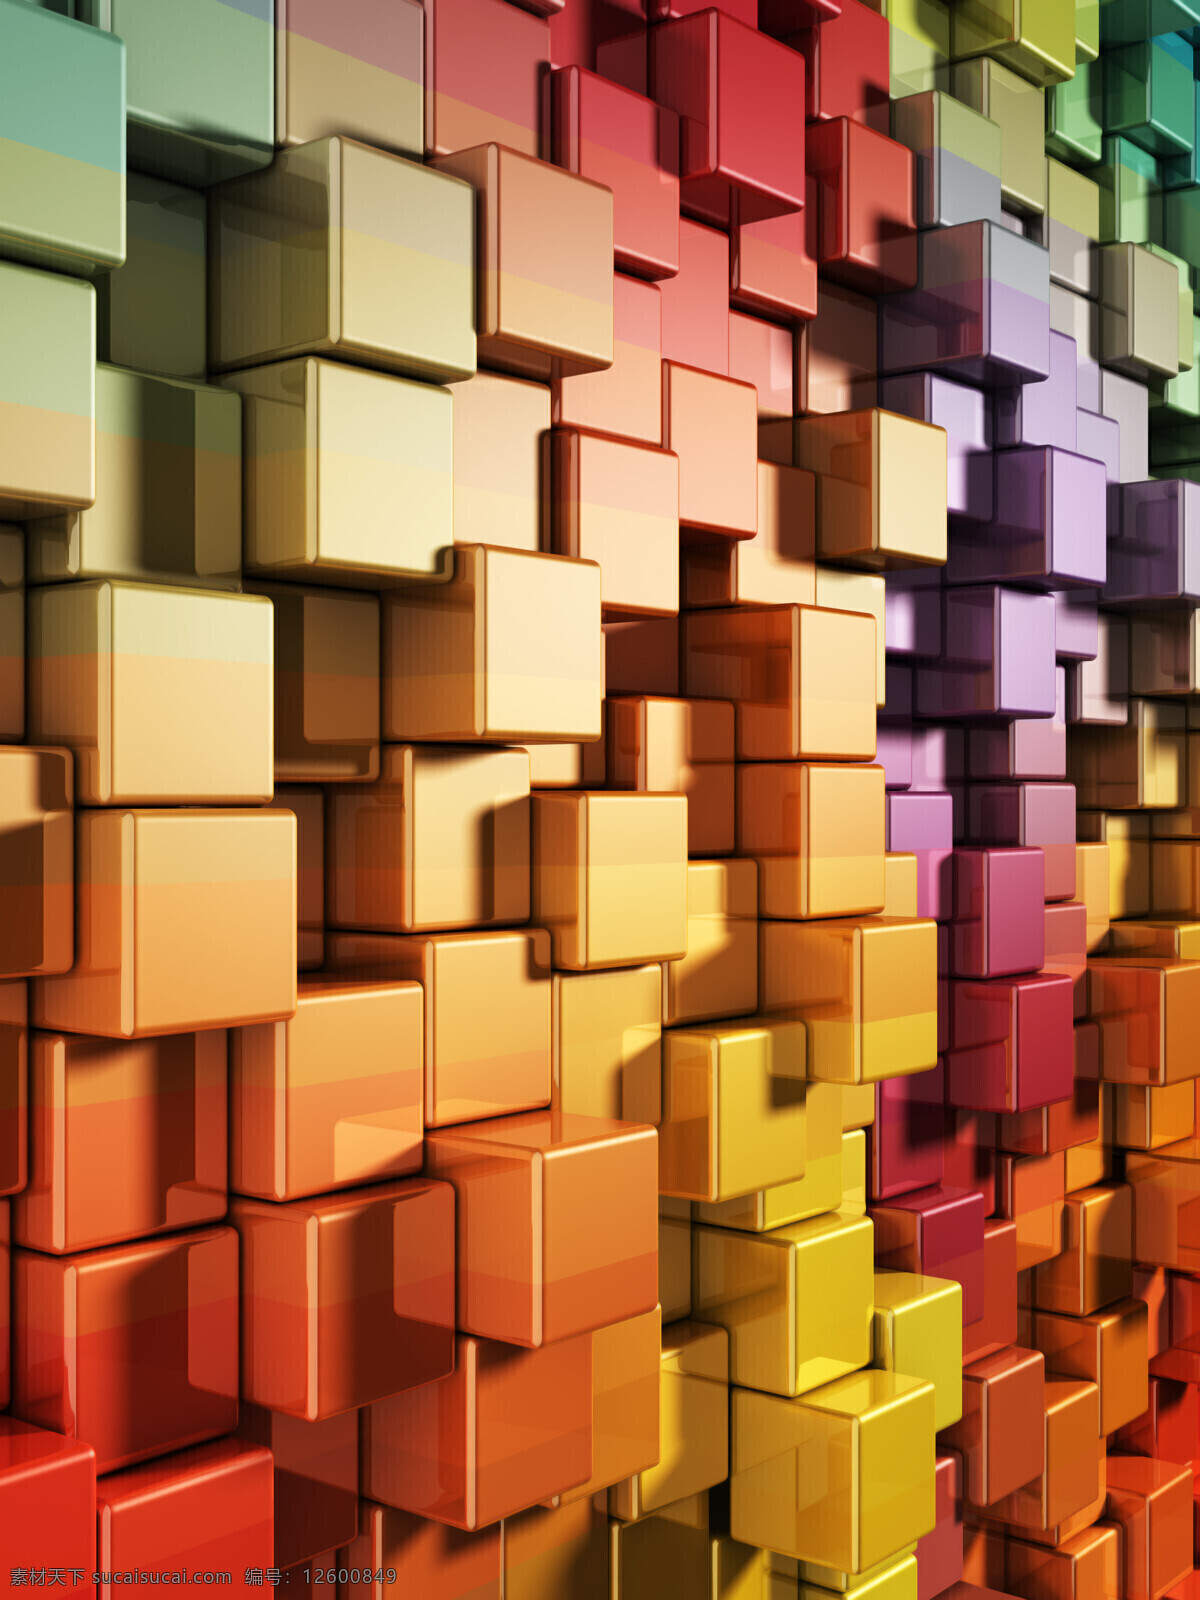 科技 感 十足 背景 高清彩色质感 立体 方块 墙面 模板下载 高科技感图片 质感 立方体 正方体 3d作品 3d设计